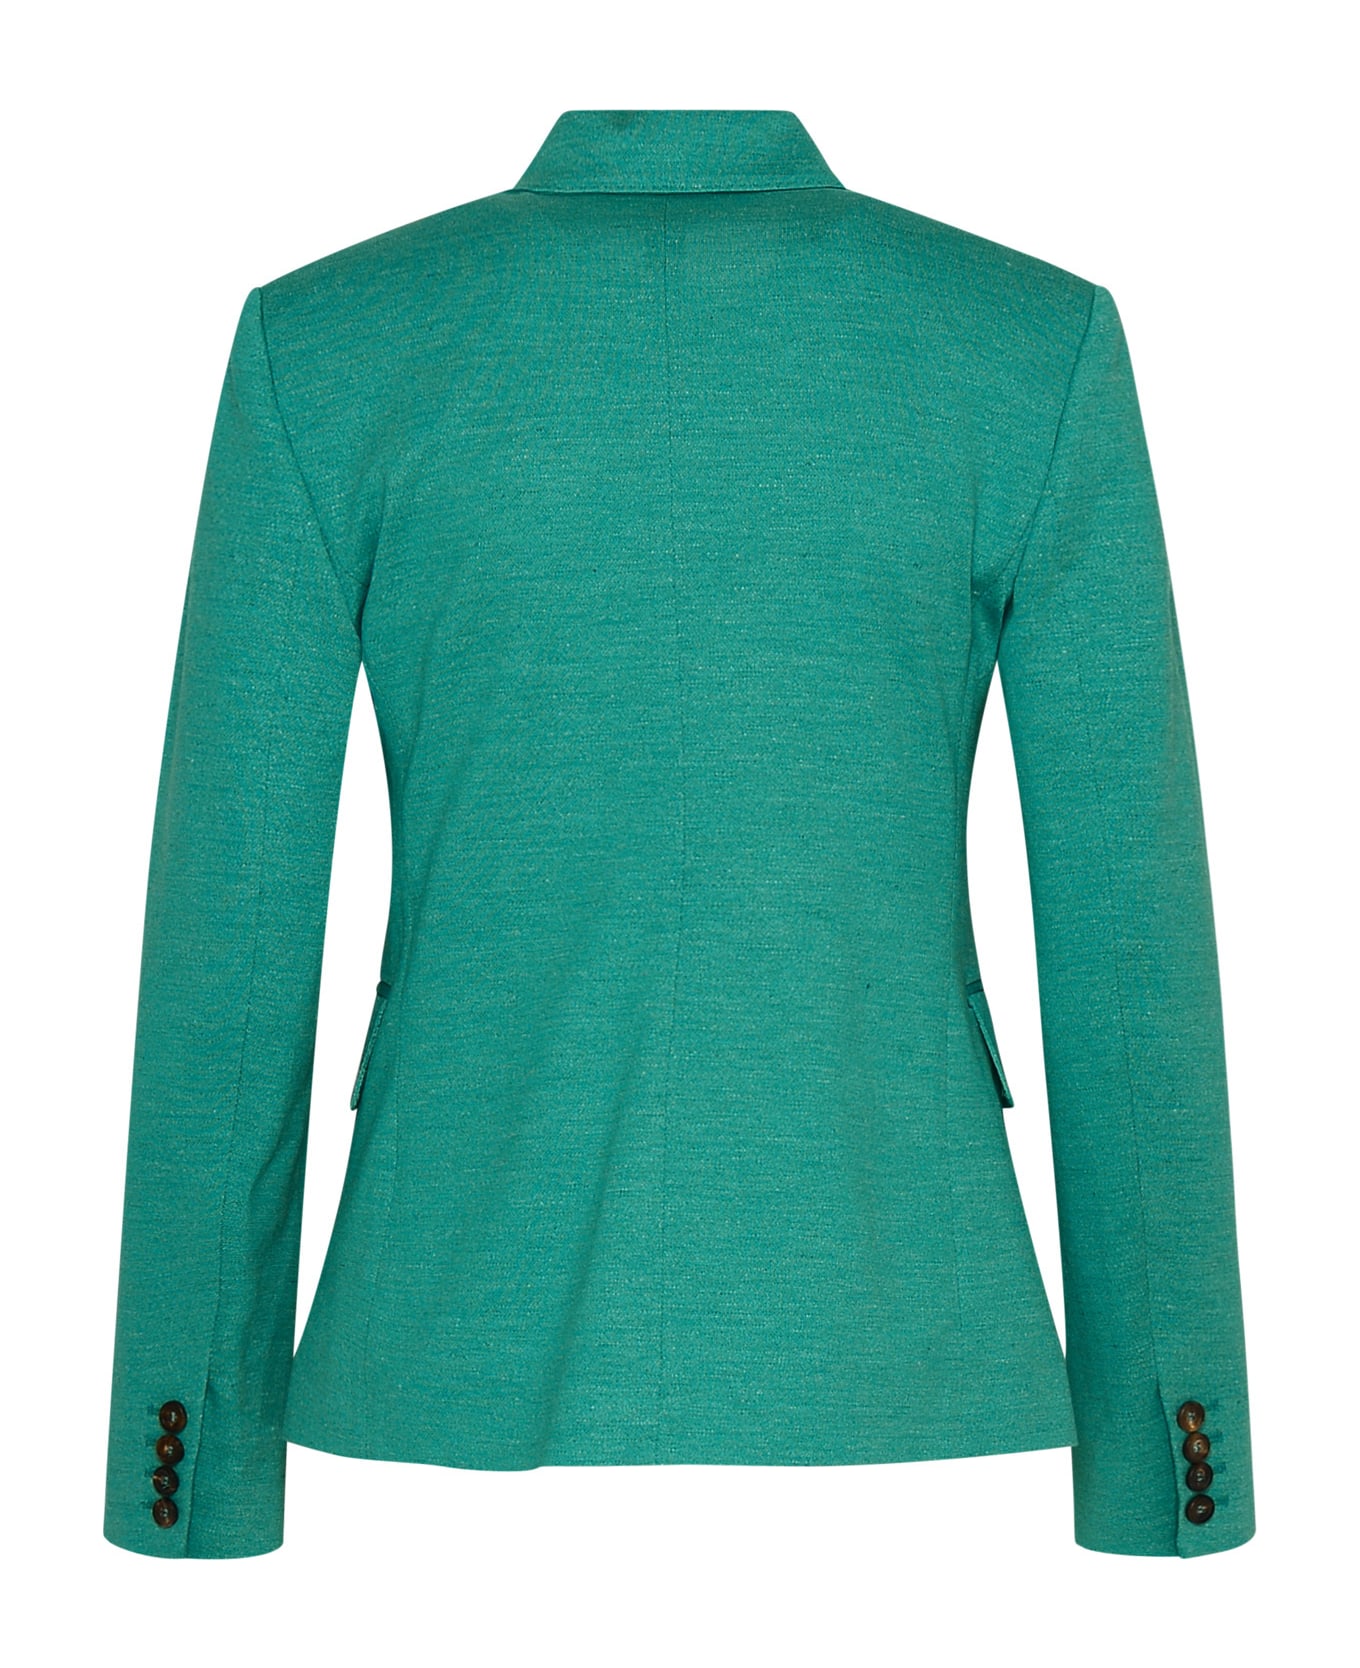 Max Mara Cashmere Green Cotton Blend Zirlo Blazer Jacket - 003